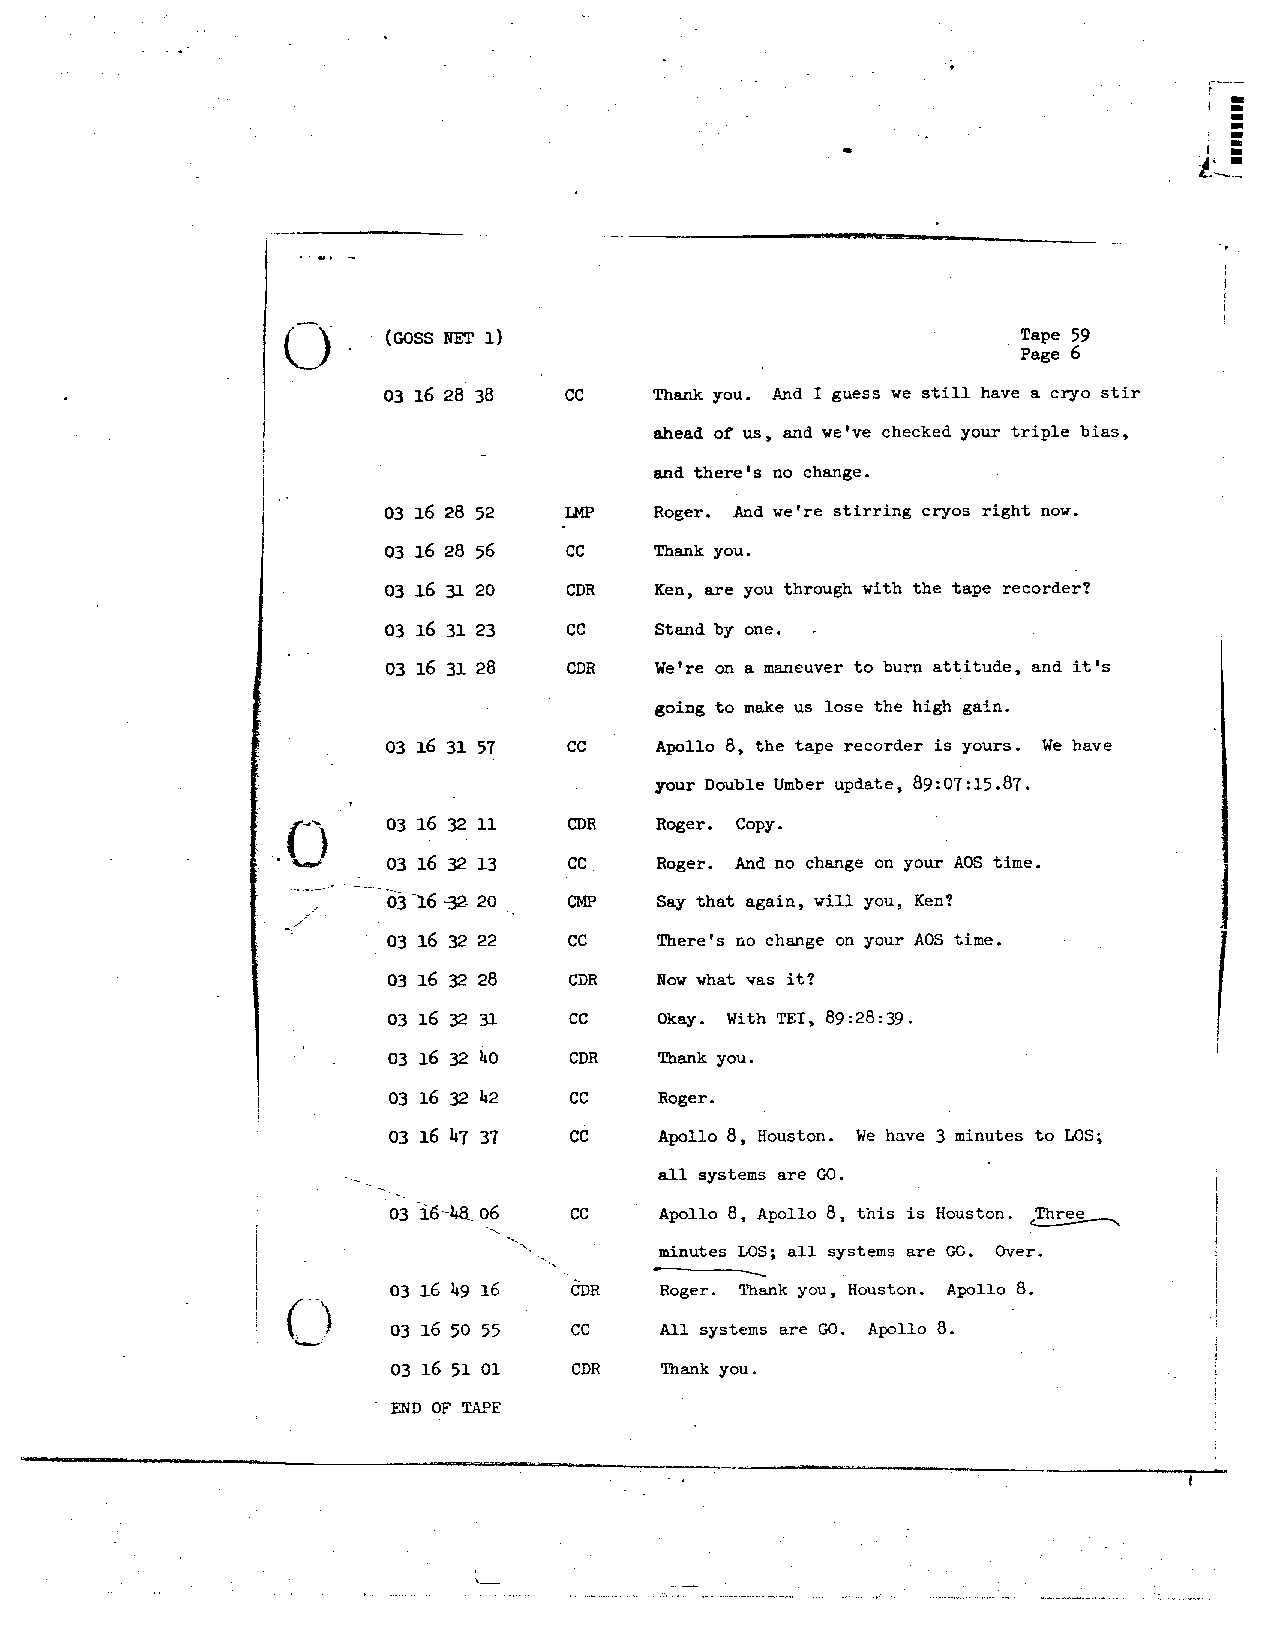 Page 475 of Apollo 8’s original transcript